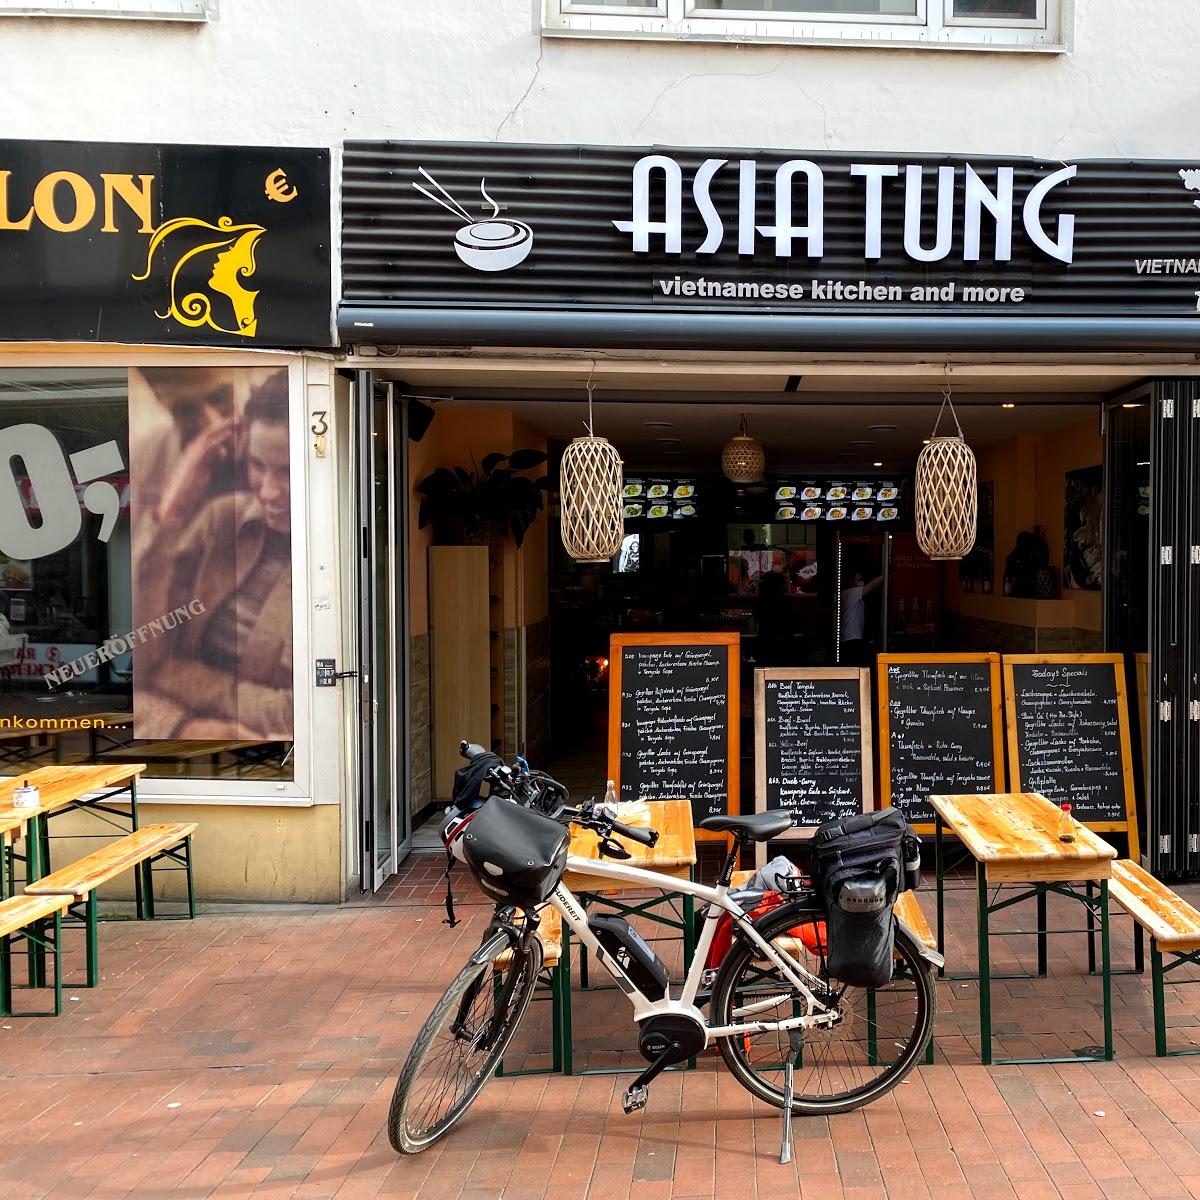 Restaurant "Tung